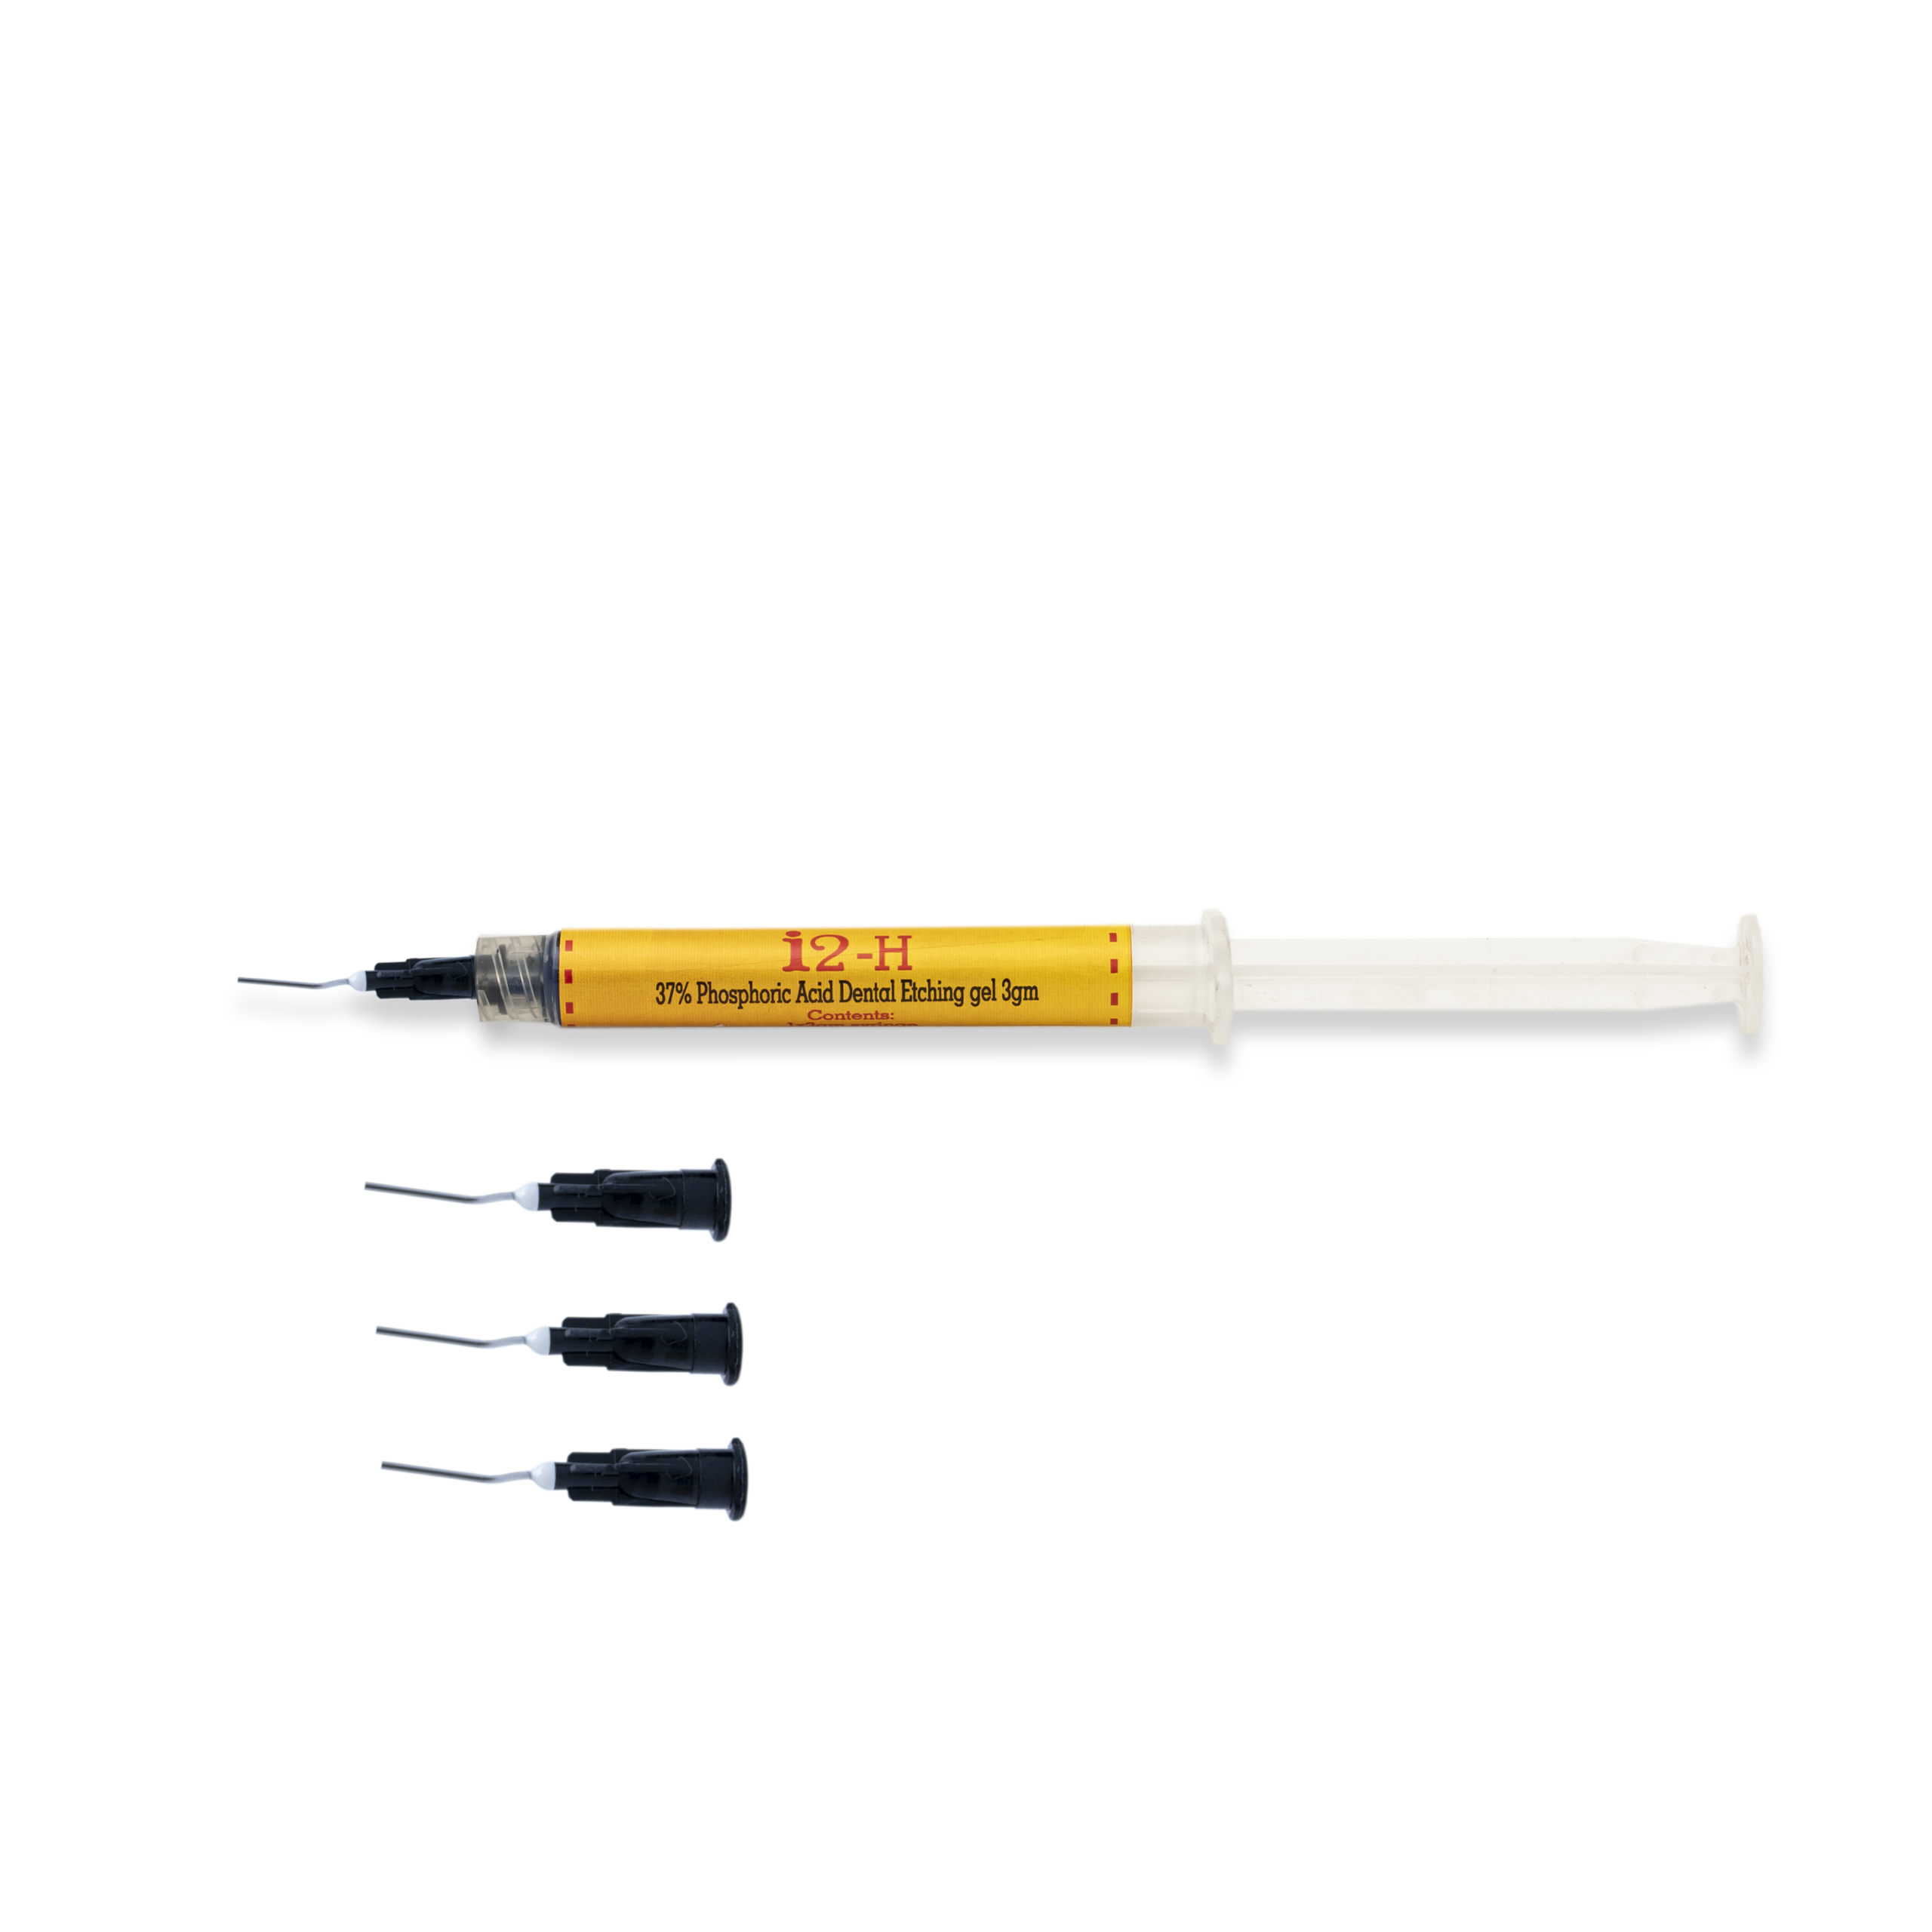 I2 - H 37% Phosphoric Acid Dental Etching Gel 3gm(2*3gm)syringe